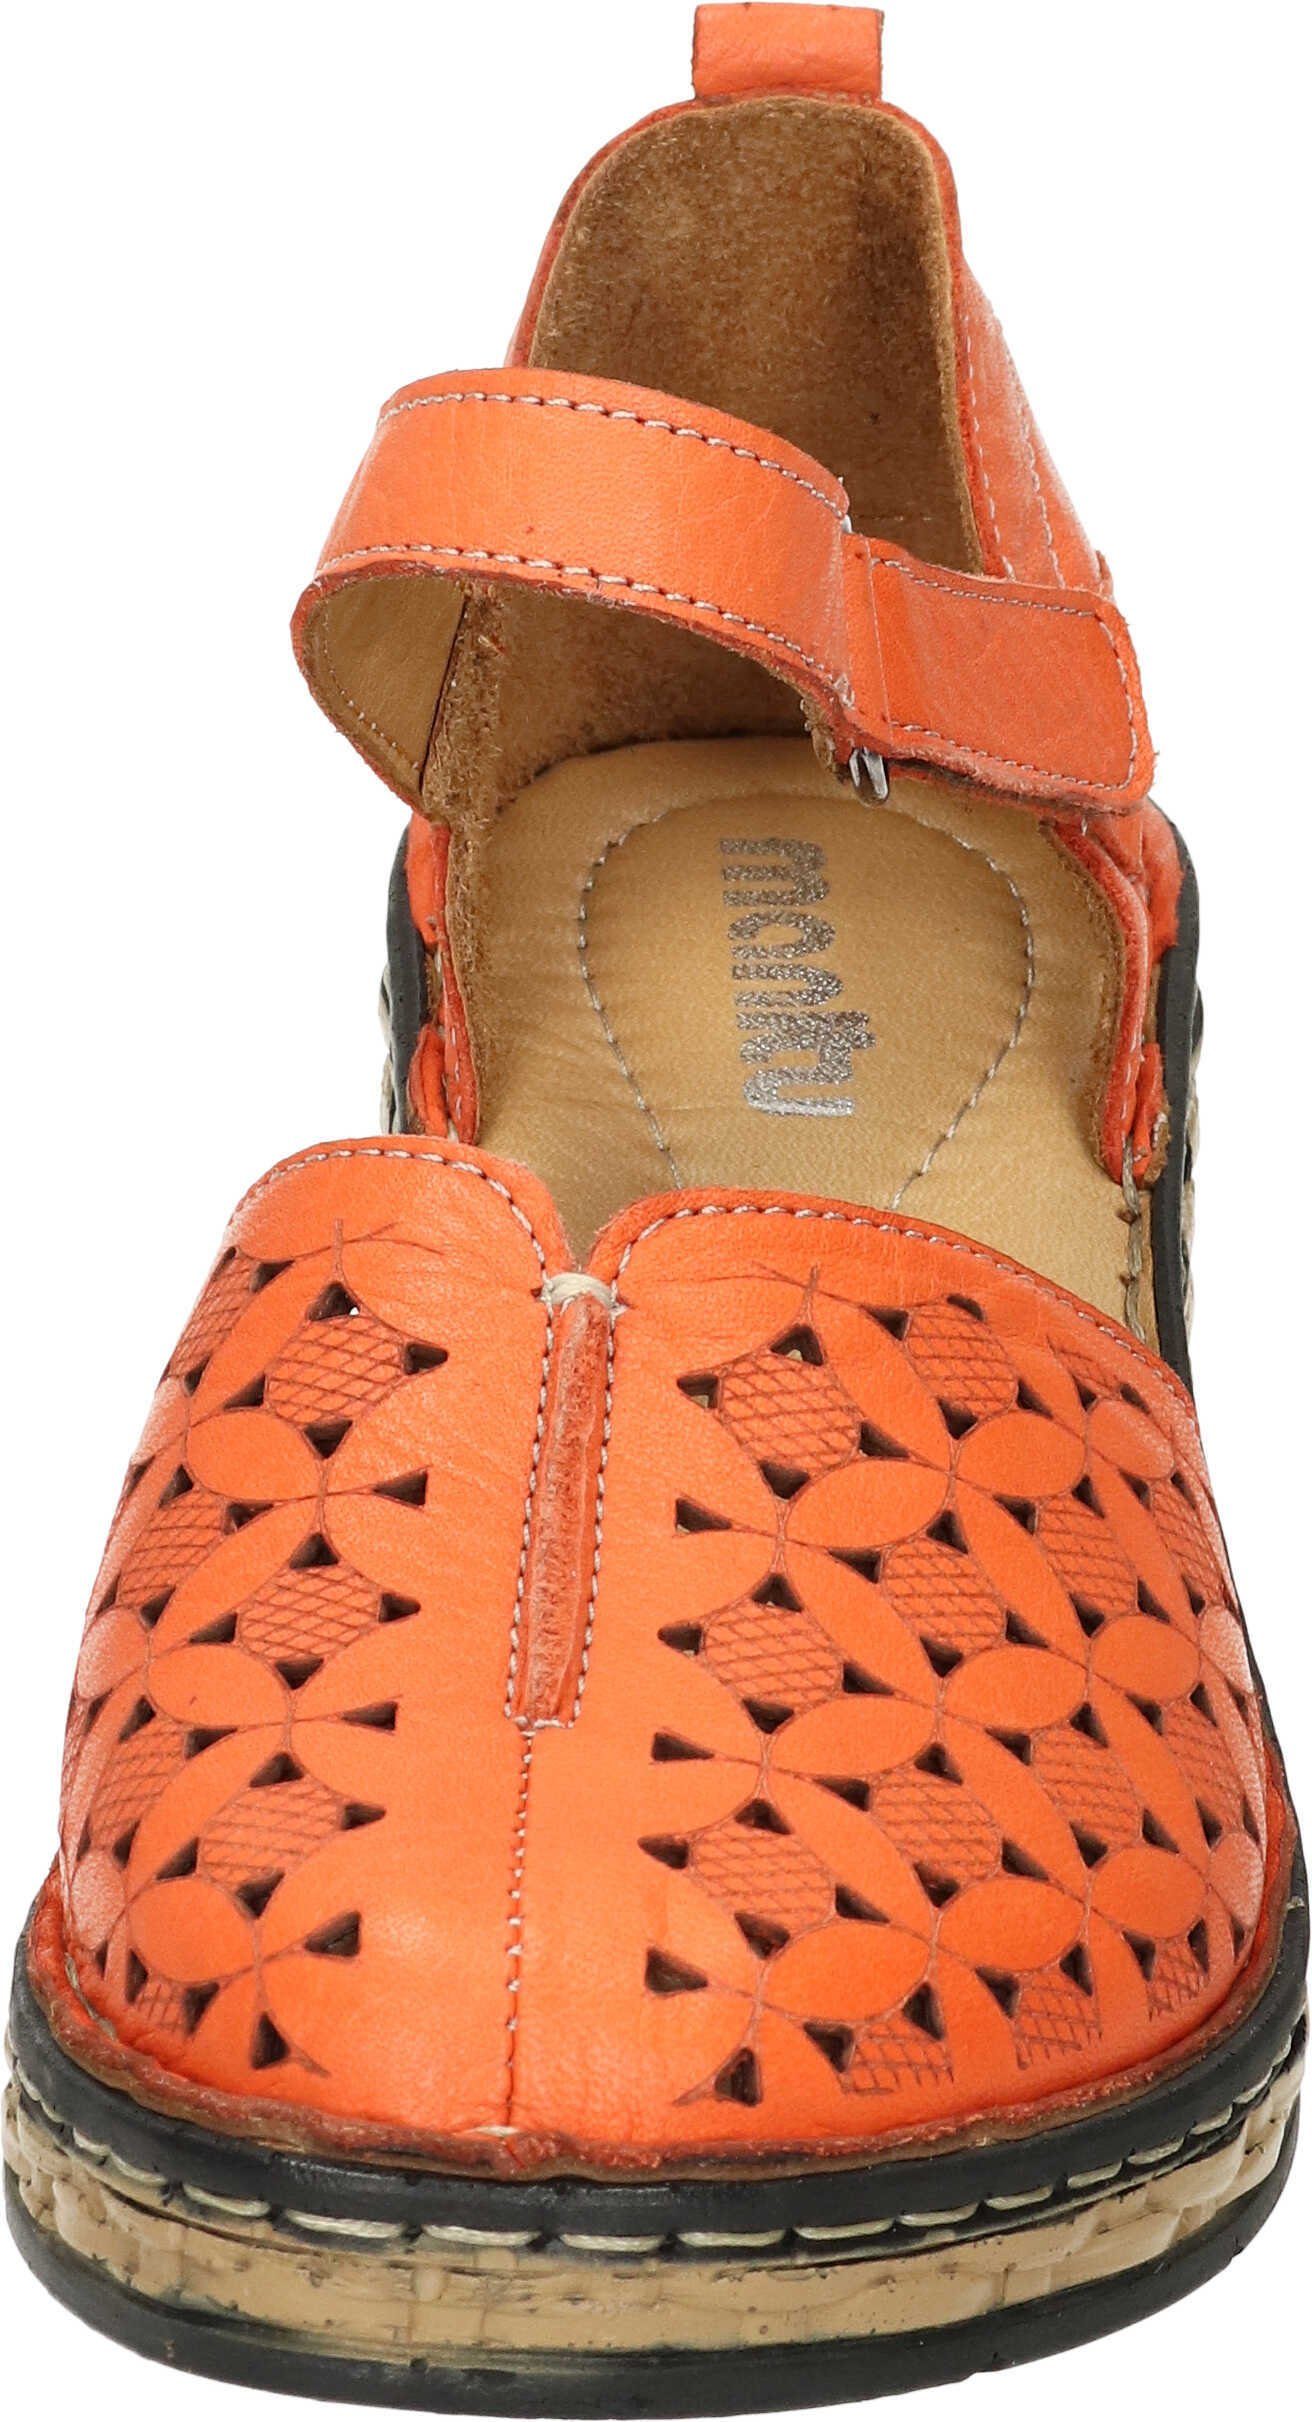 Sandaletten echtem aus orange Leder Sandalette Manitu